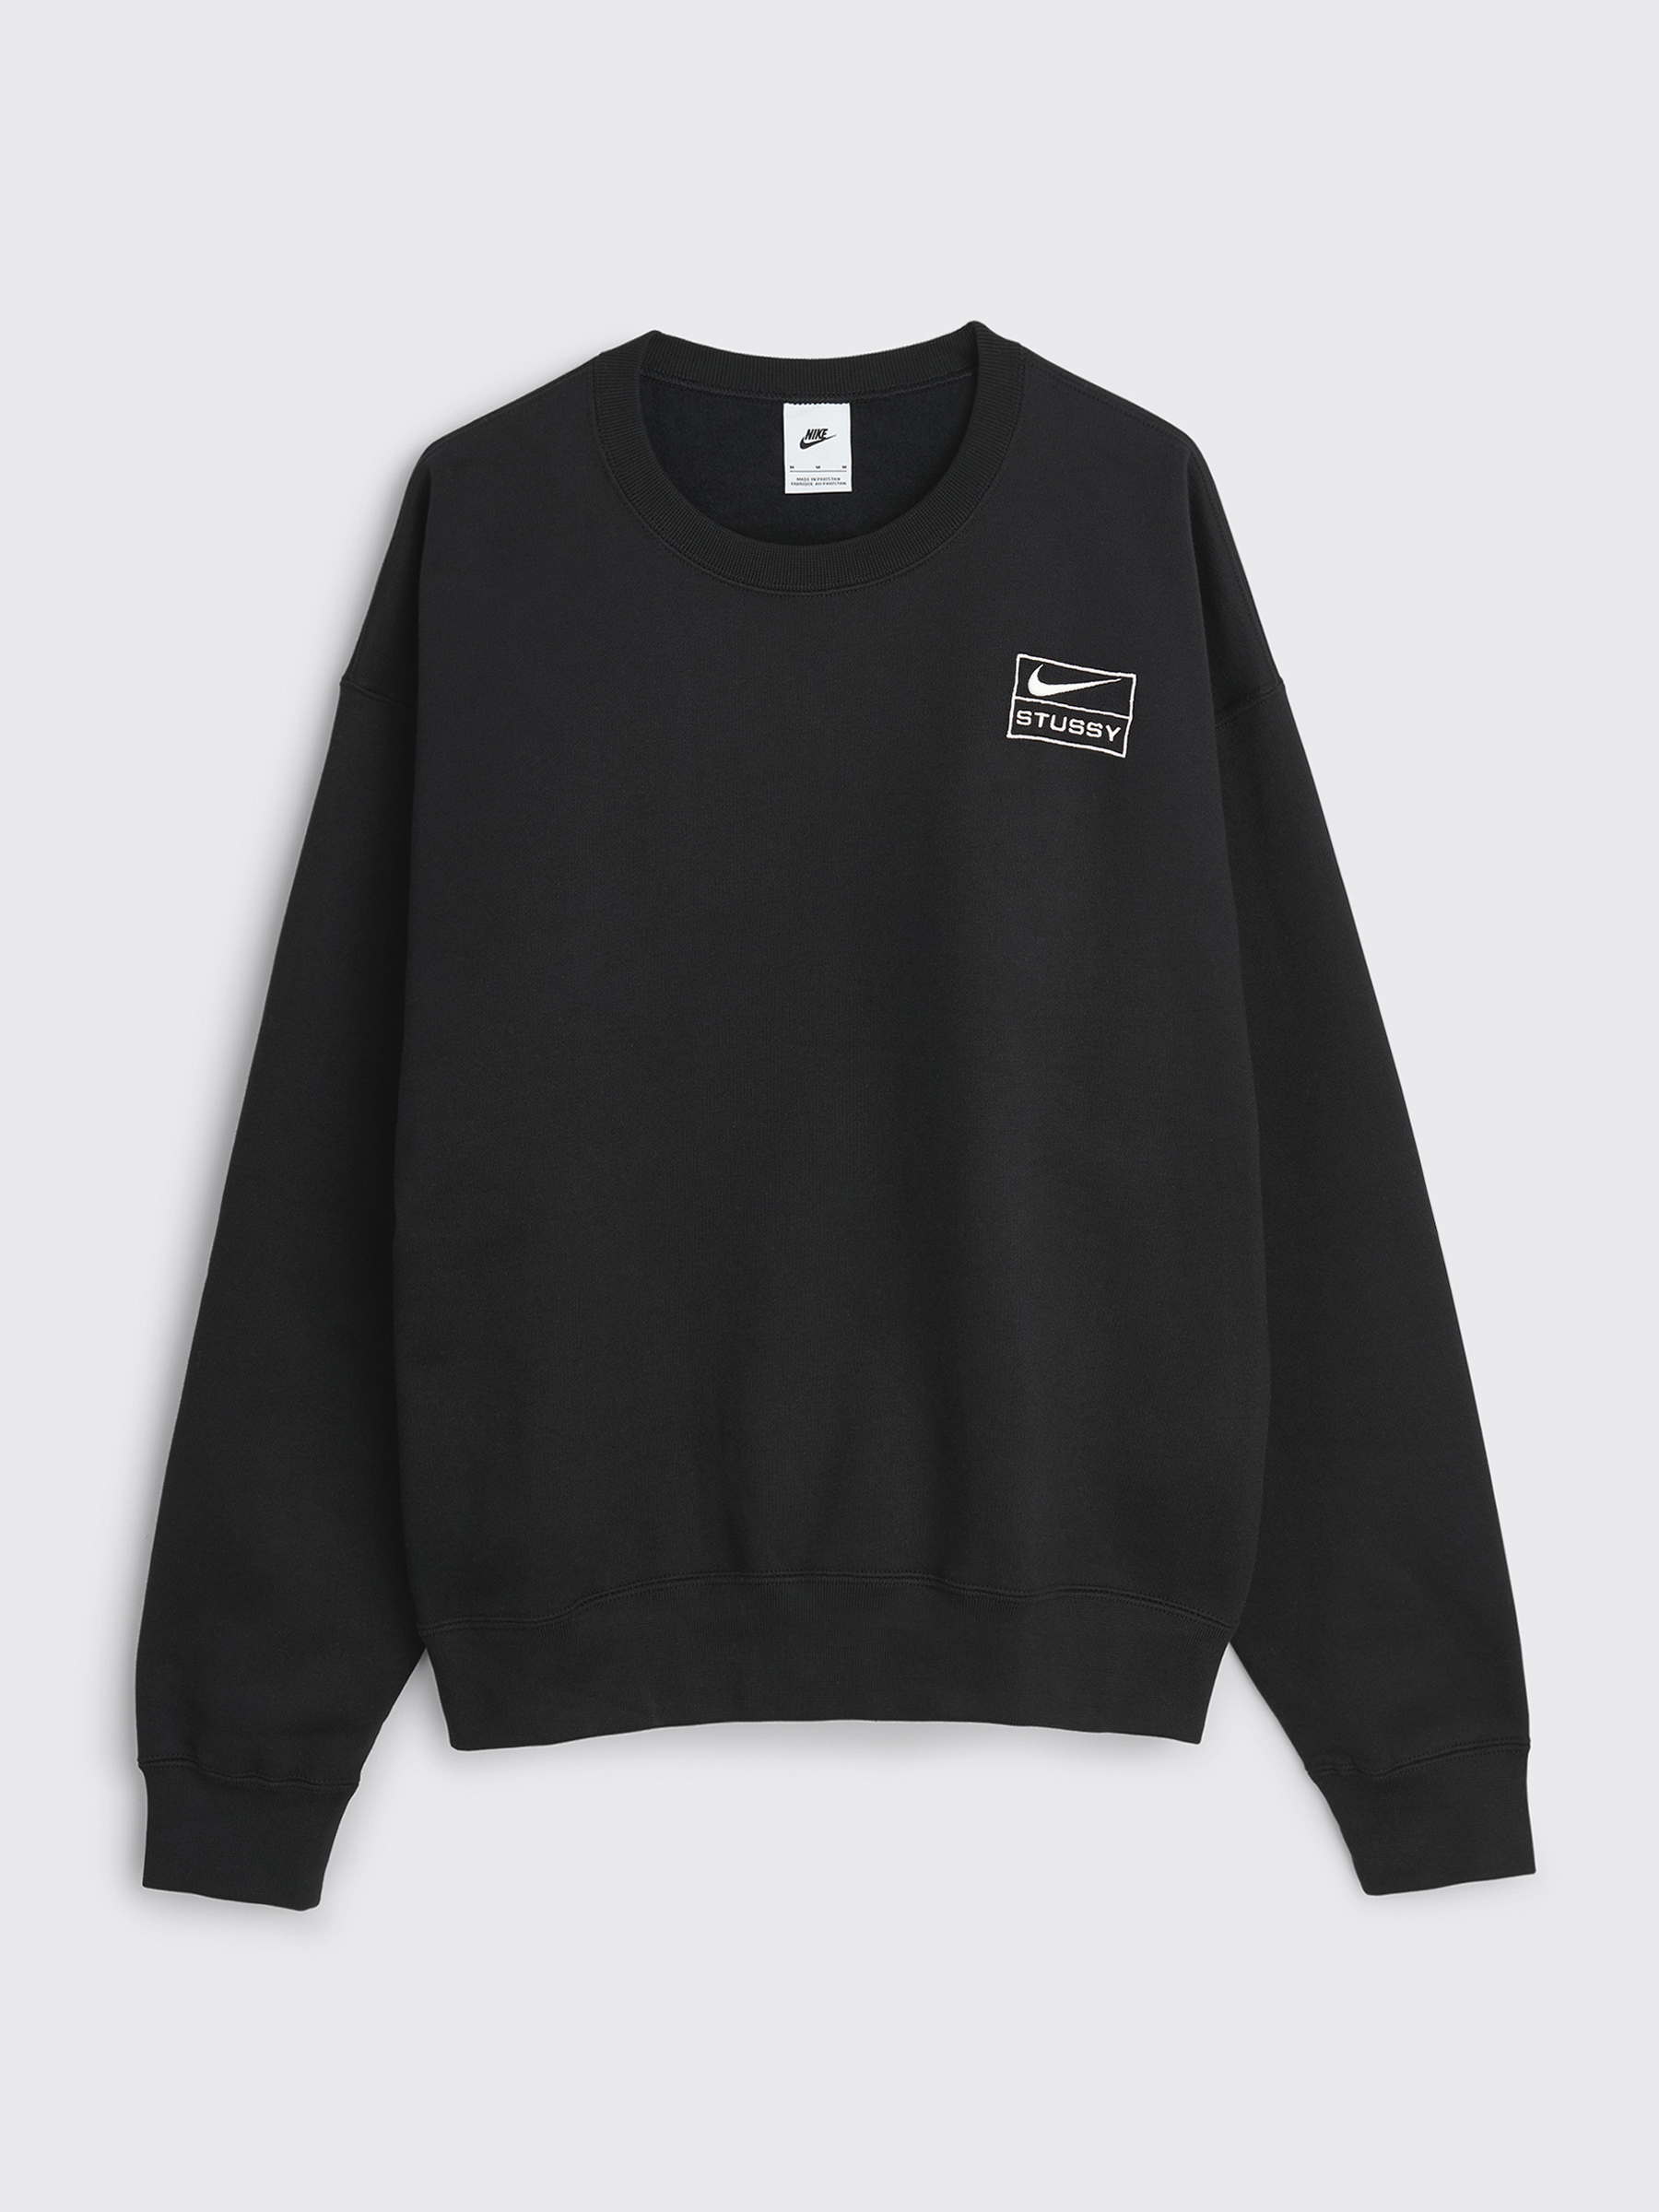 9,000円NIKE STUSSY Crewneck Sweatshirt Black